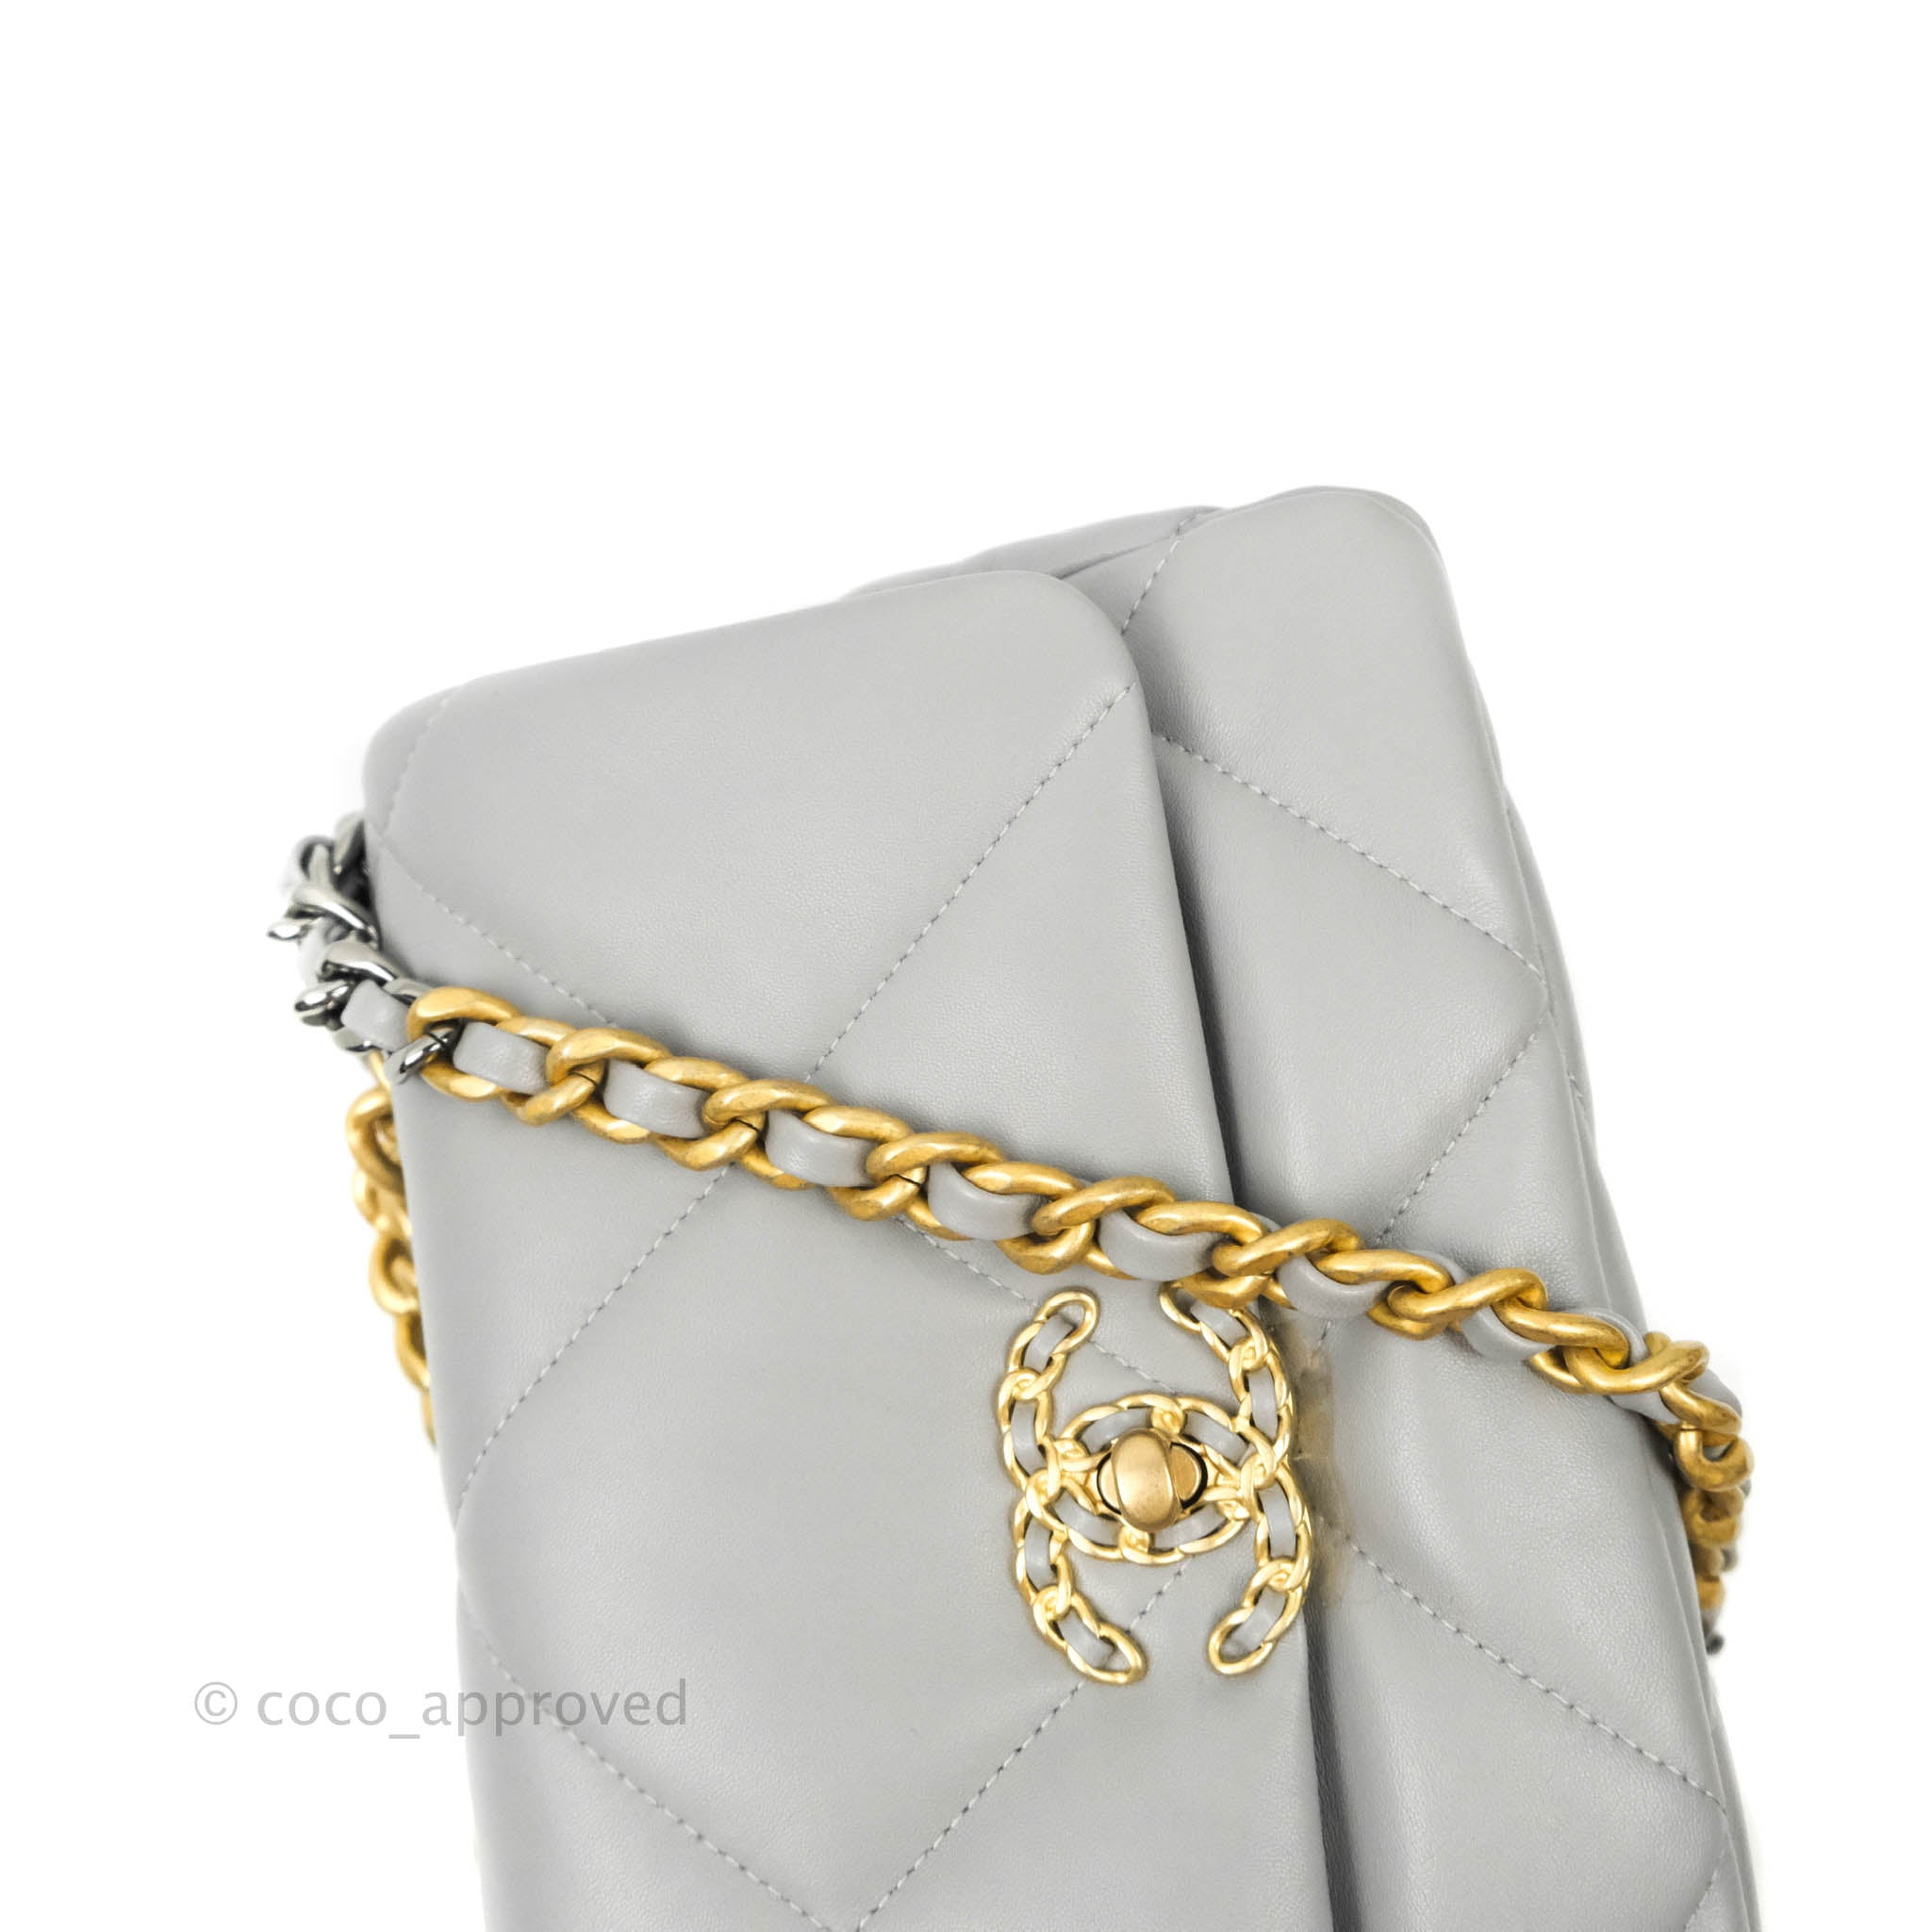 chanel grey purse